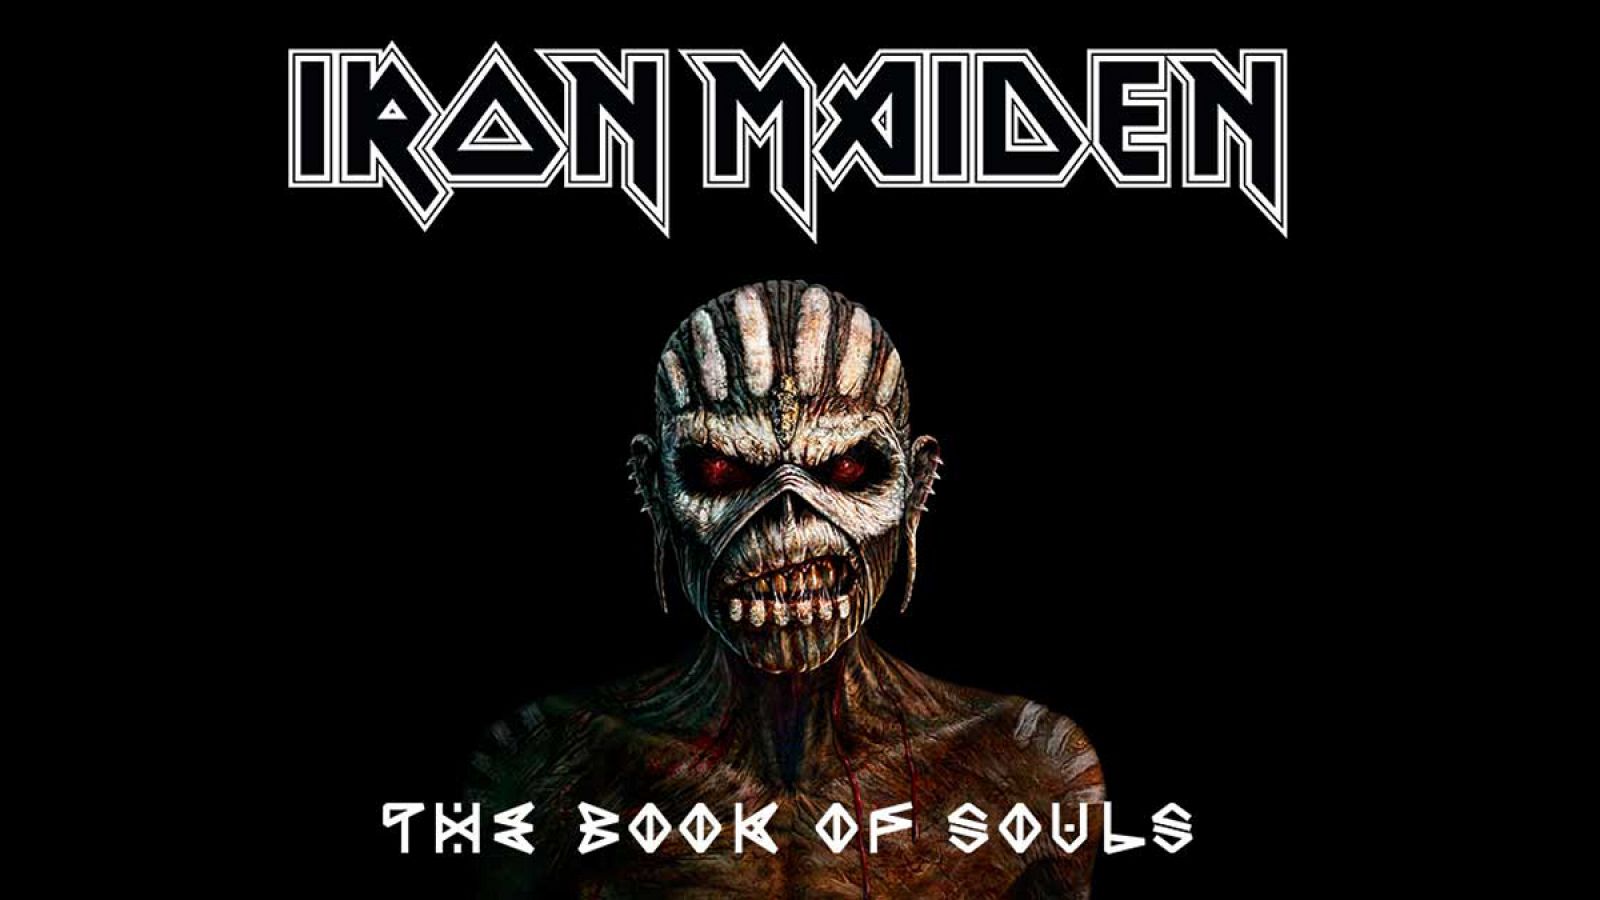 Portada de 'The book of souls', el nuevo trabajo de Iron Maiden